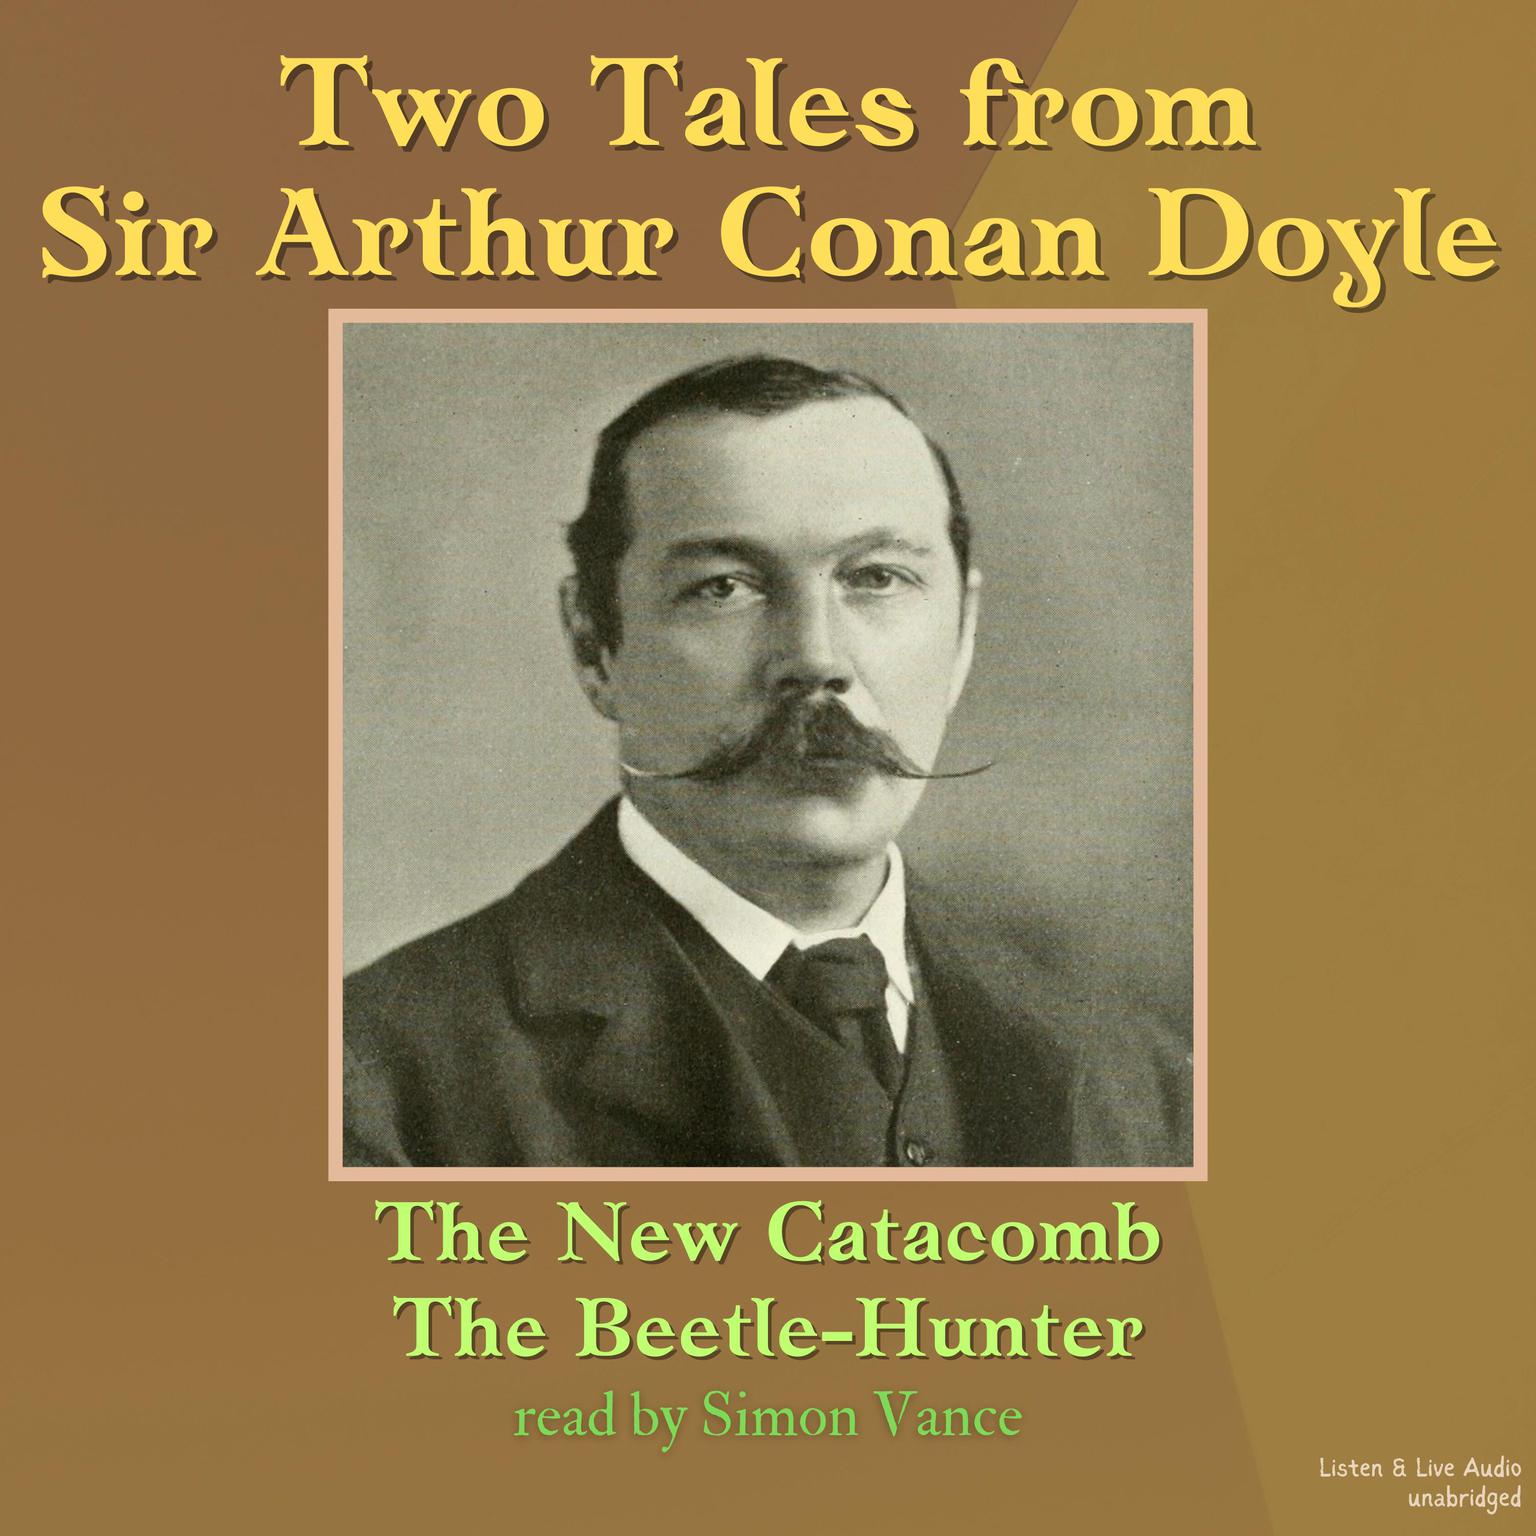 Two Tales From Sir Arthur Conan Doyle Audiobook, by Arthur Conan Doyle